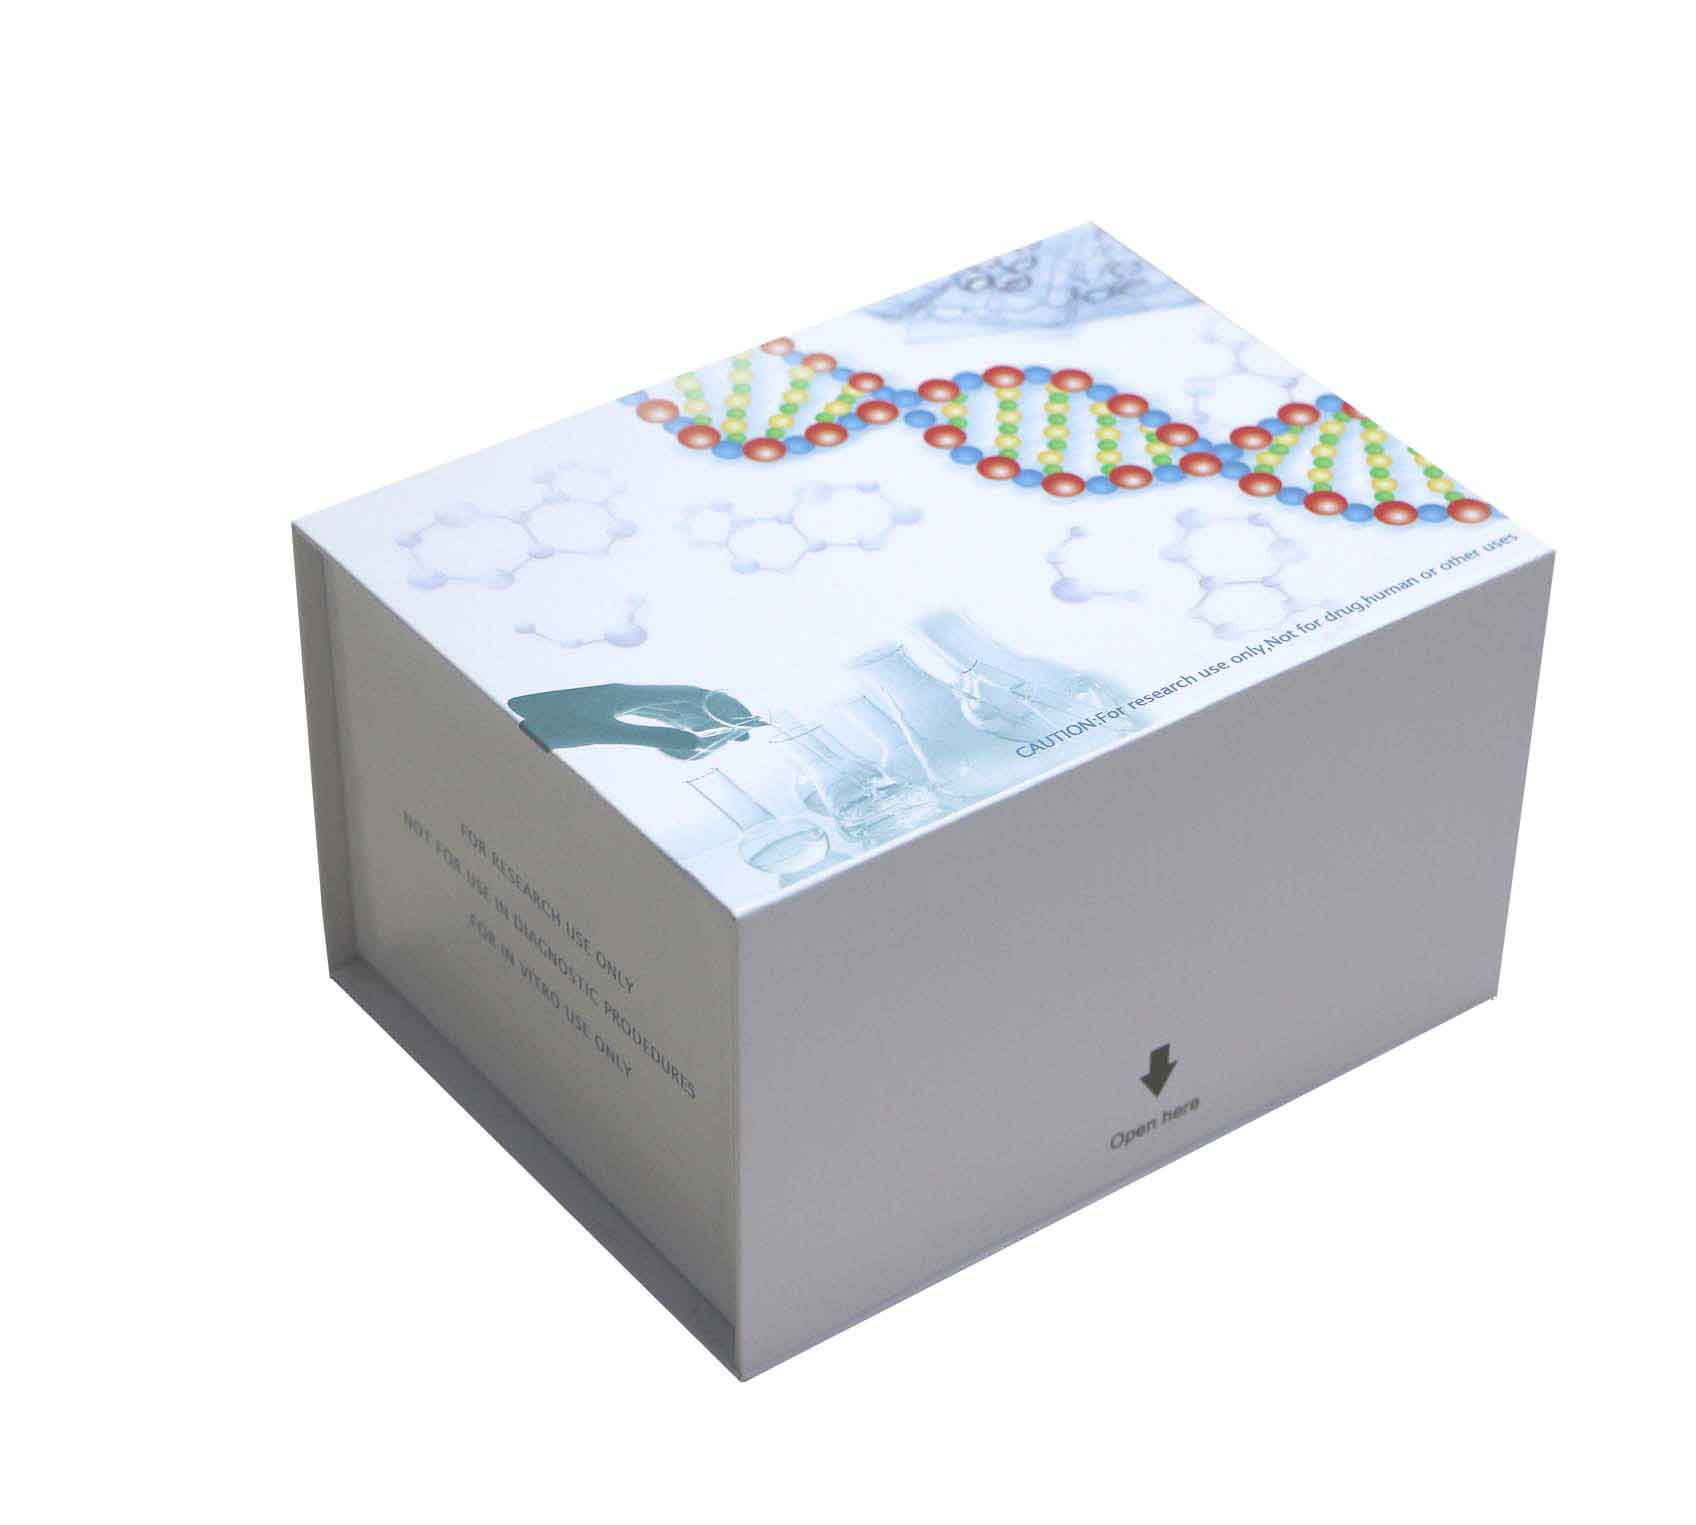 腺苷脱氨酶(ADA)检测试剂盒(波氏比色法)